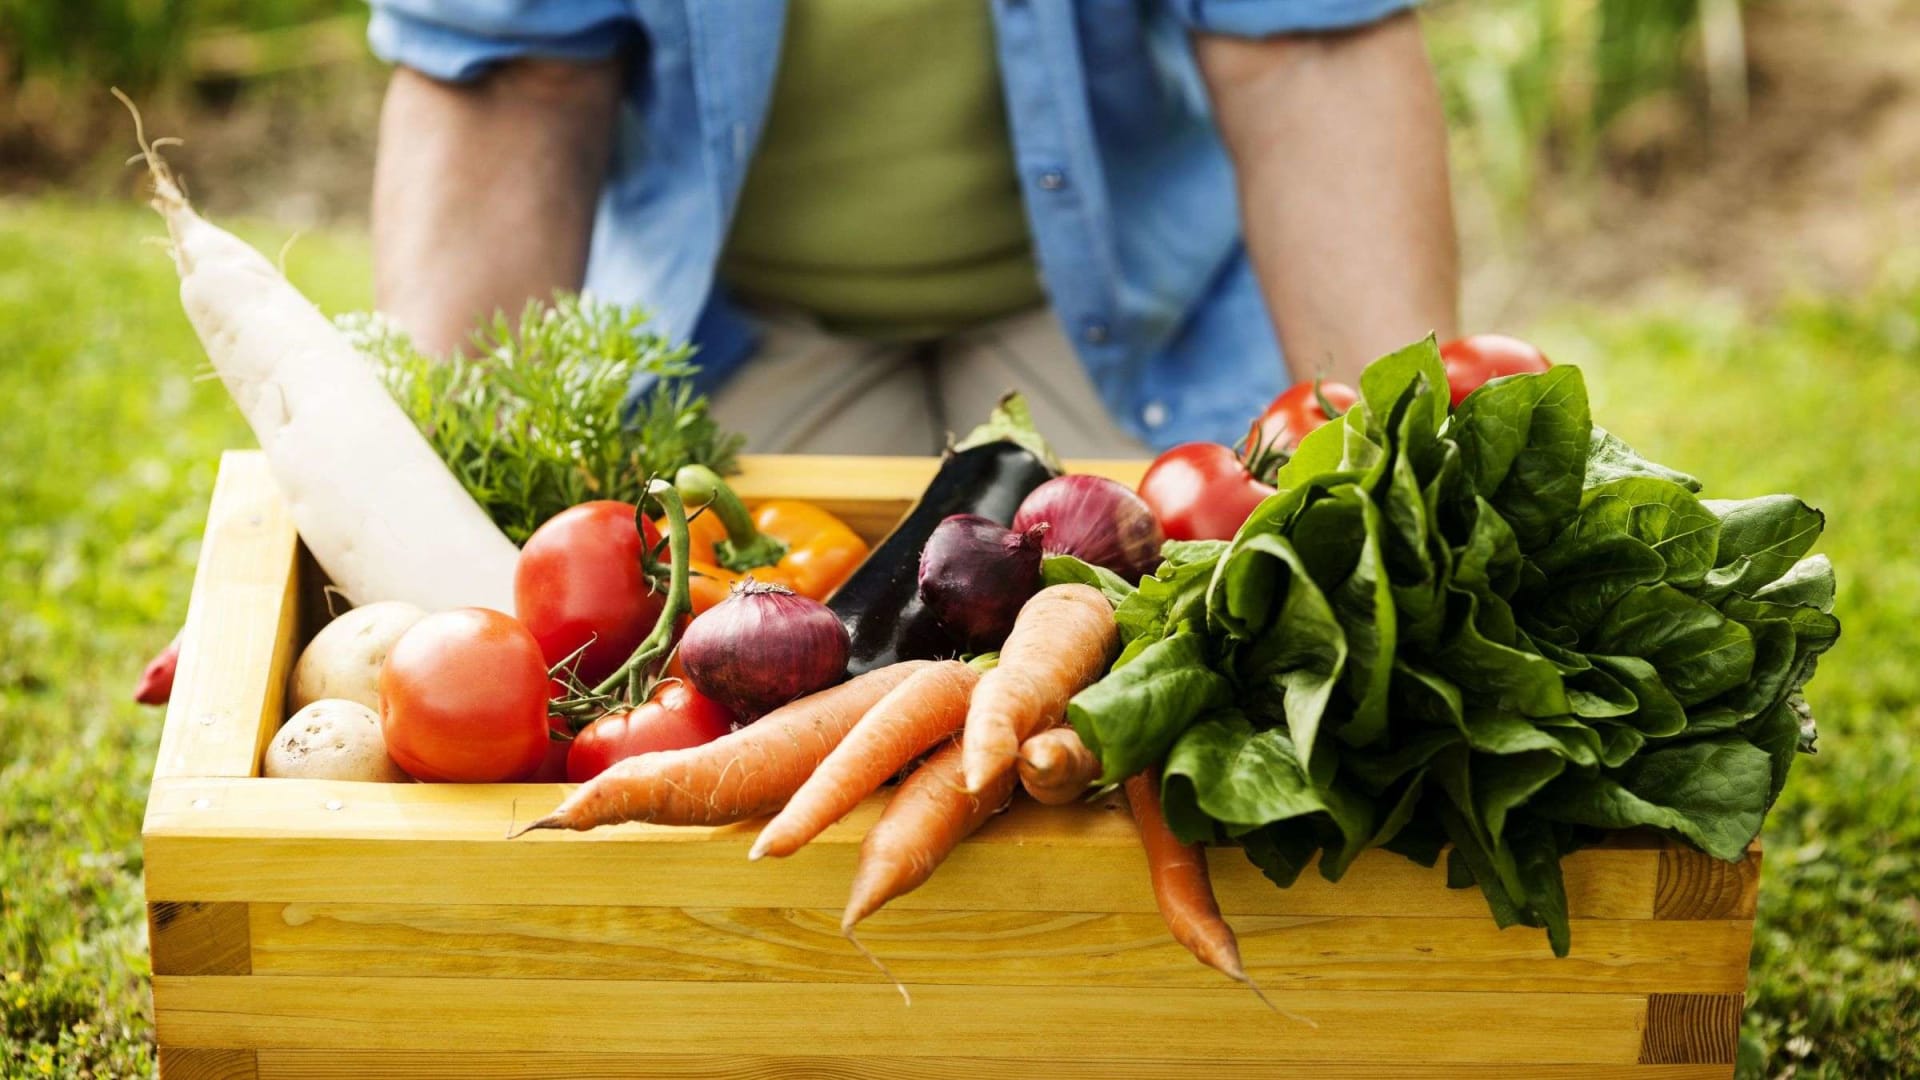 15 بديلاً لأطعمة سهلة تساعدك في تناول طعام صحي